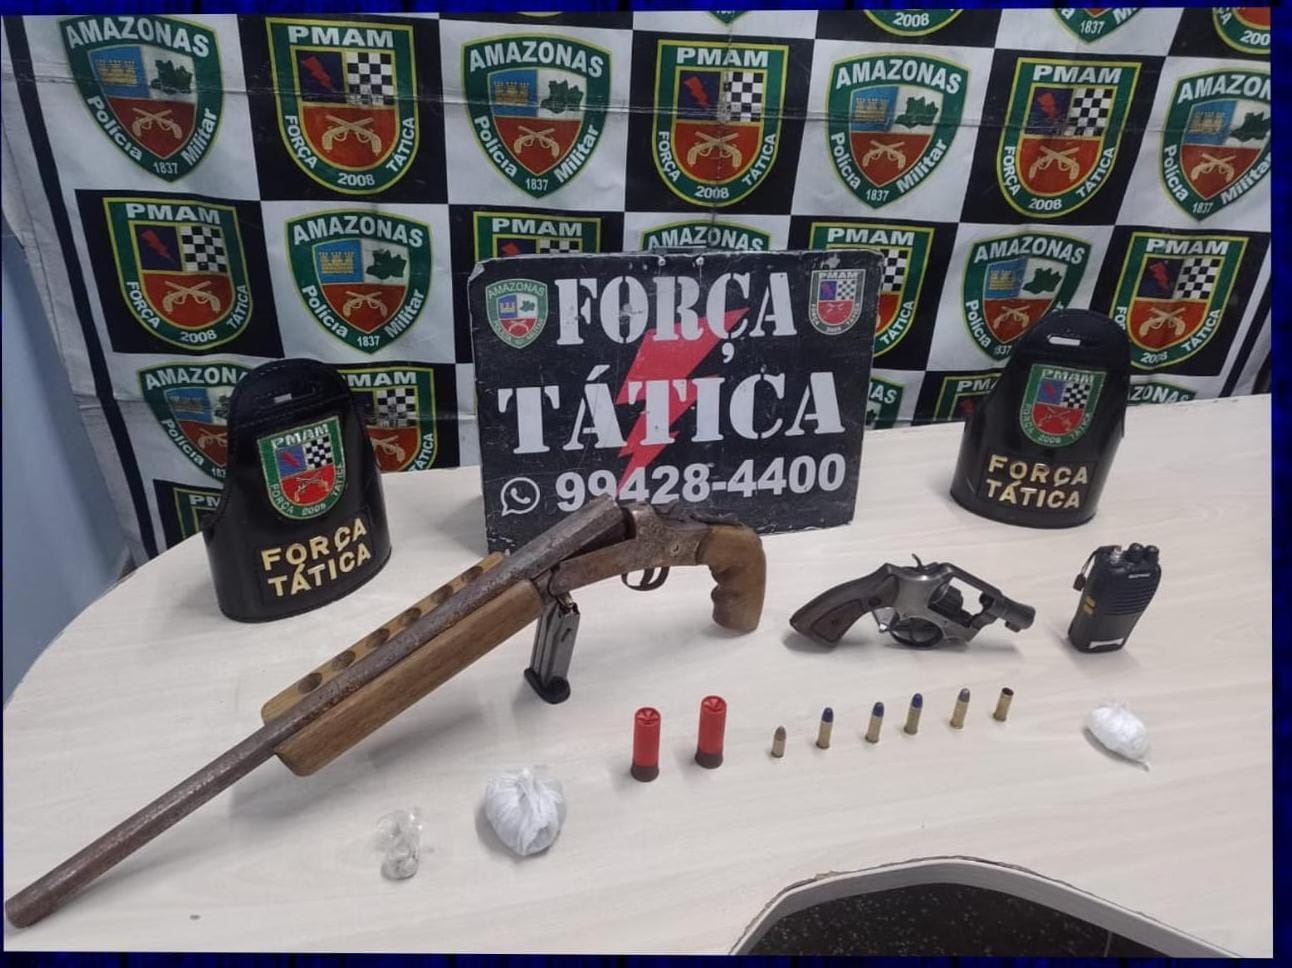 Armas foram apreendidas em ações de fiscalização da polícia - Foto: Divulgação/PMAM